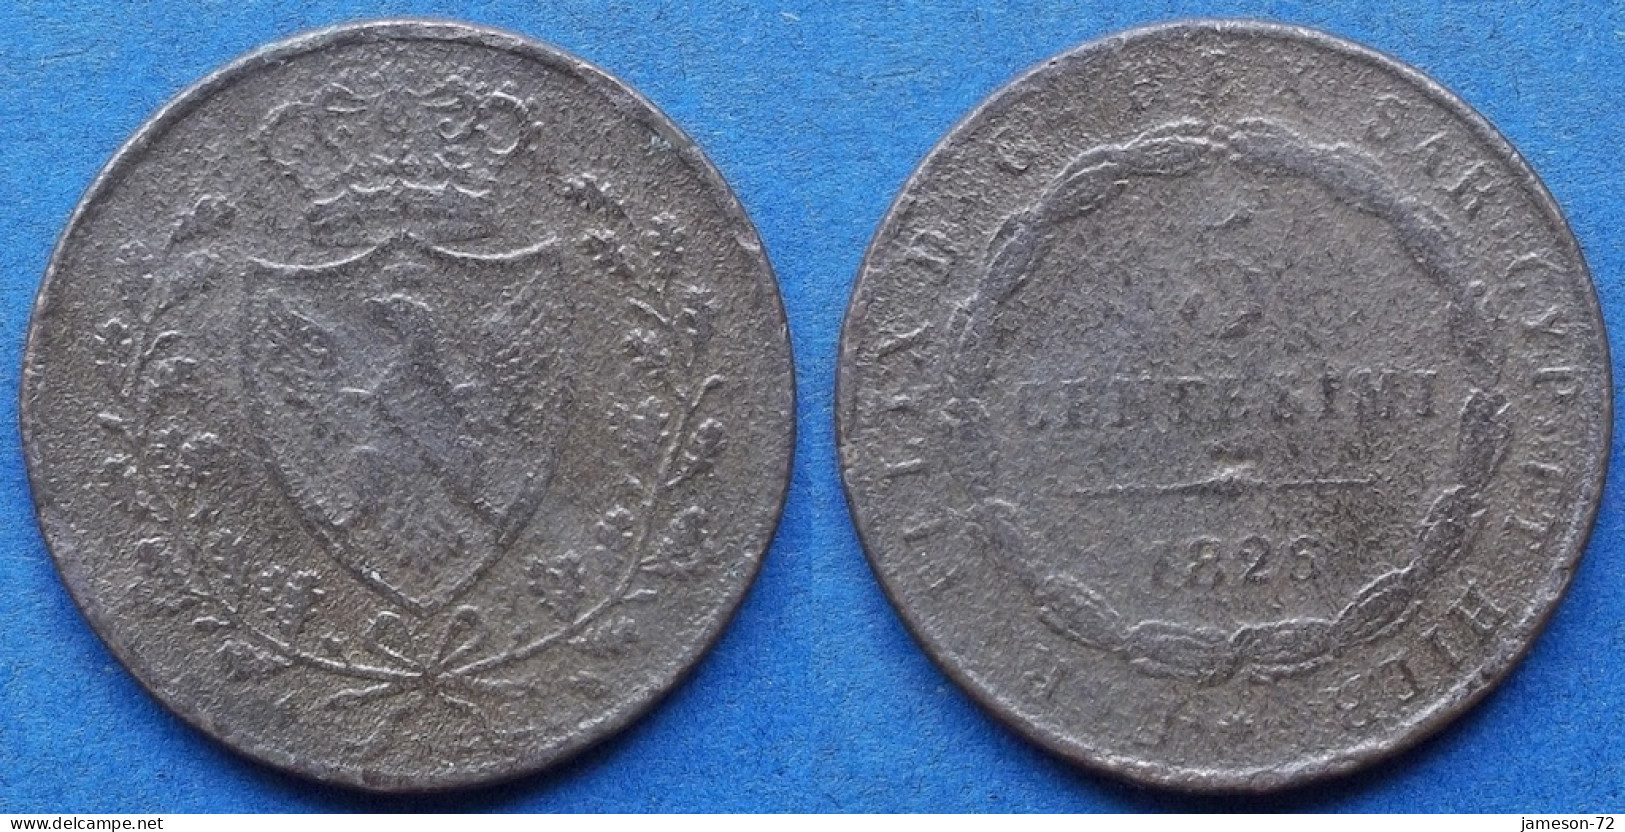 SARDINIA - 5 Centesimi 1826 KM# 127 Carlo Felice (1821-1831) - Edelweiss Coins - Italian Piedmont-Sardinia-Savoie